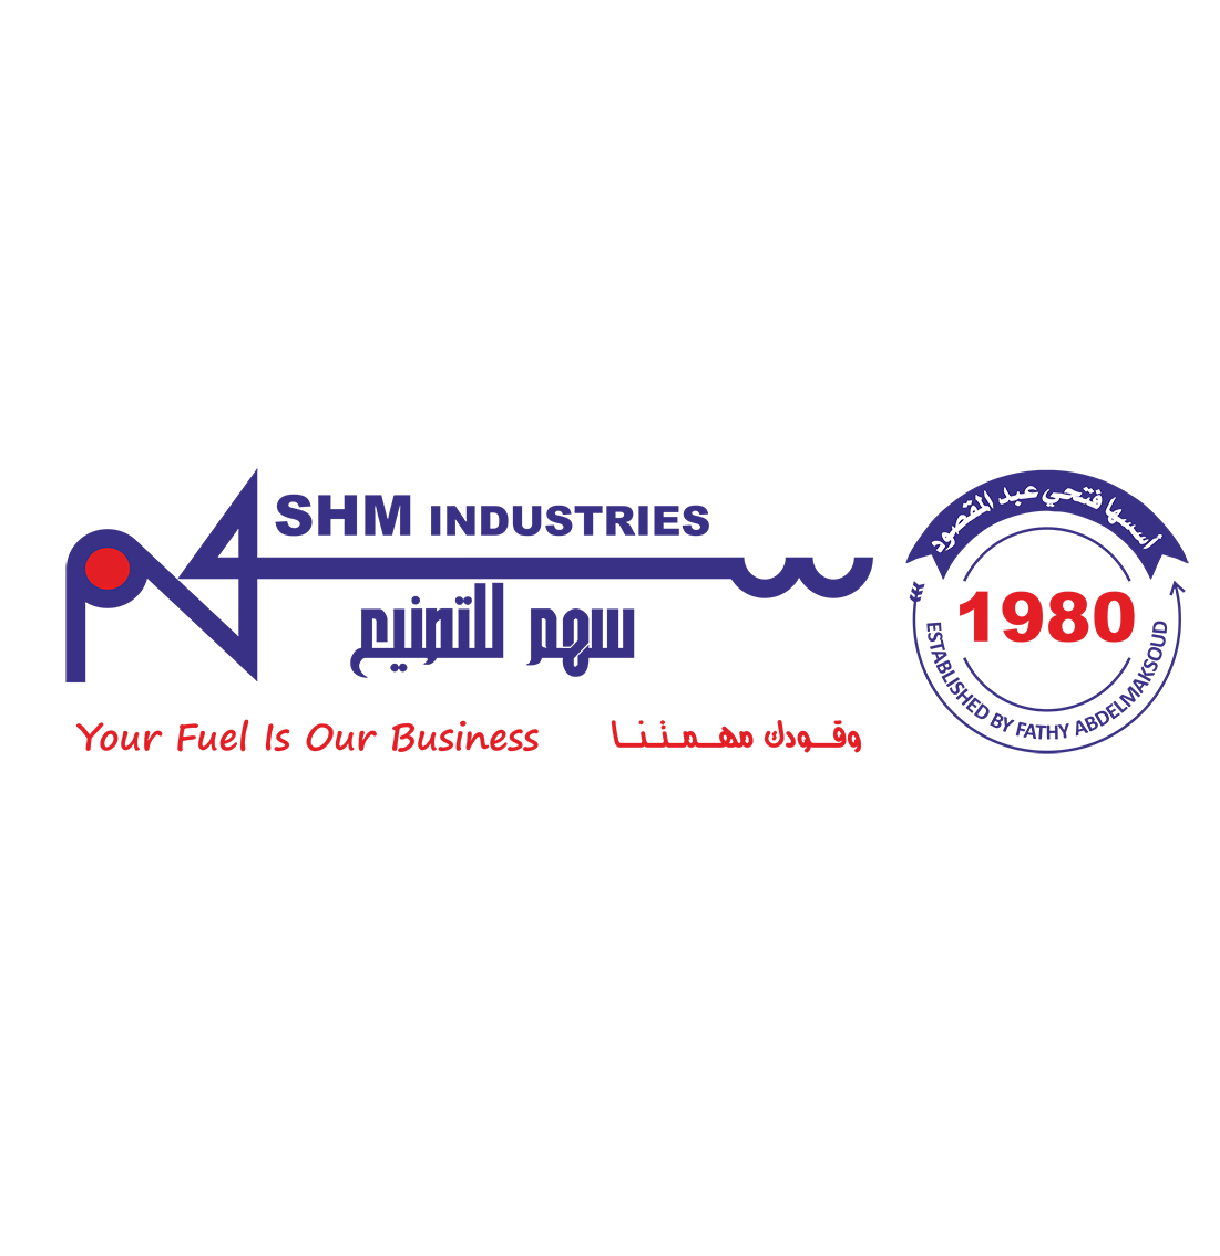 SHM industry